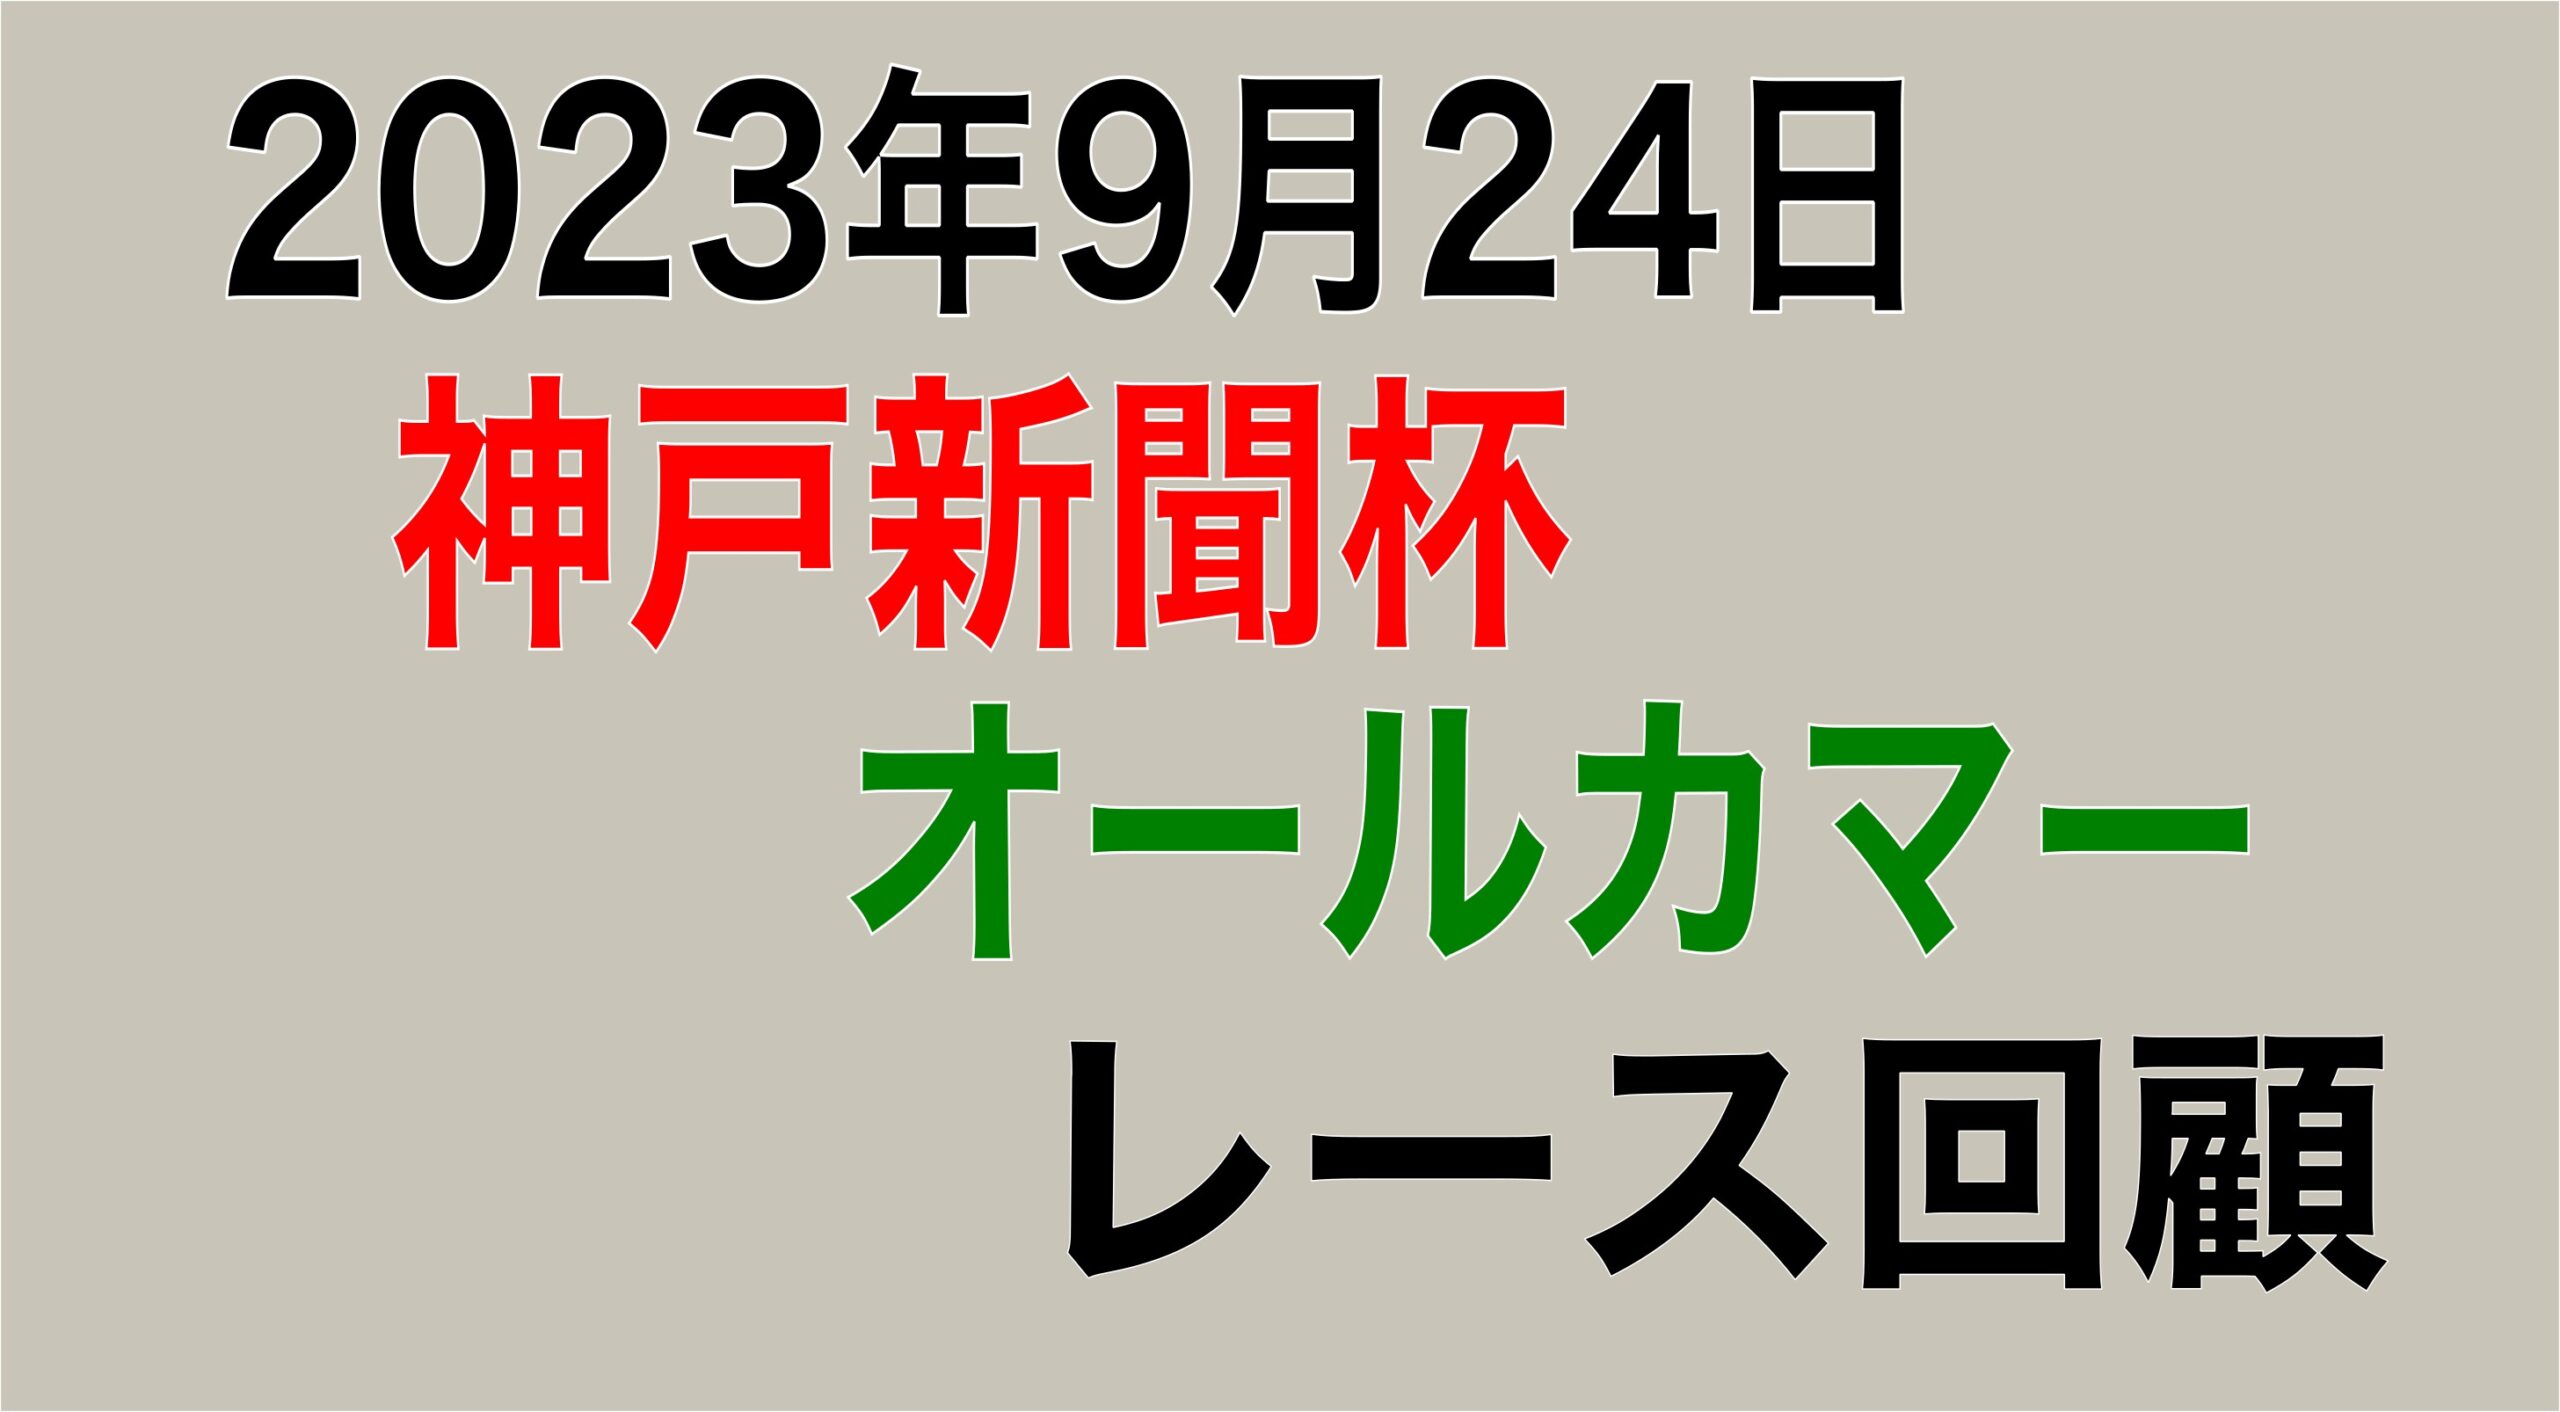 2023年9月24日(日) 神戸新聞杯(G2)・オールカマー(G2) レース回顧考察